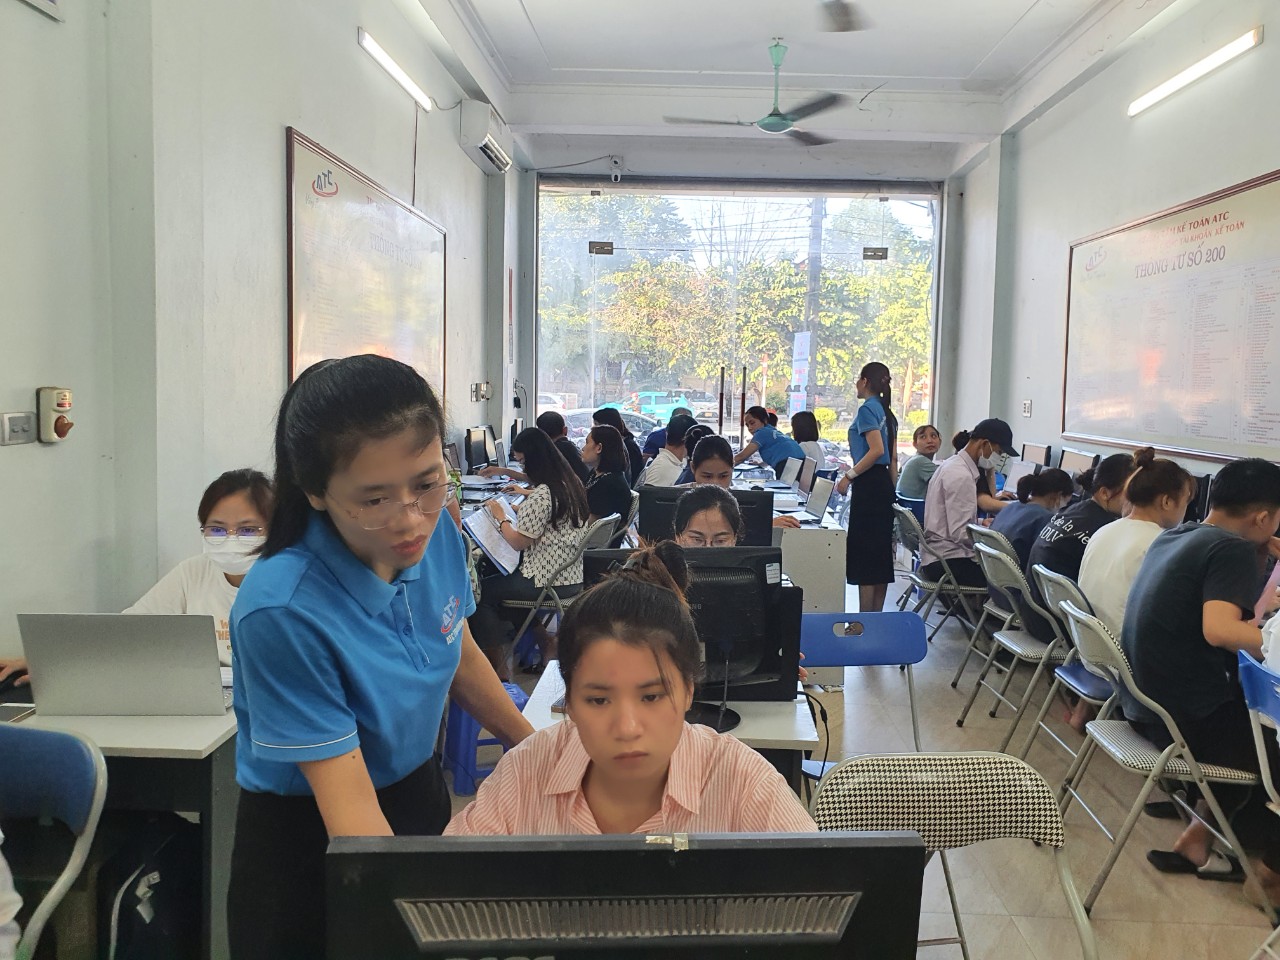 Nơi dạy tin học văn phòng tại Thanh Hóa NGƯỜI THẦY VẪN LẶNG LẼ ĐI VỀ SỚM TRƯA...Tháng 11, tháng tri ân các thầy cô giáo, những người